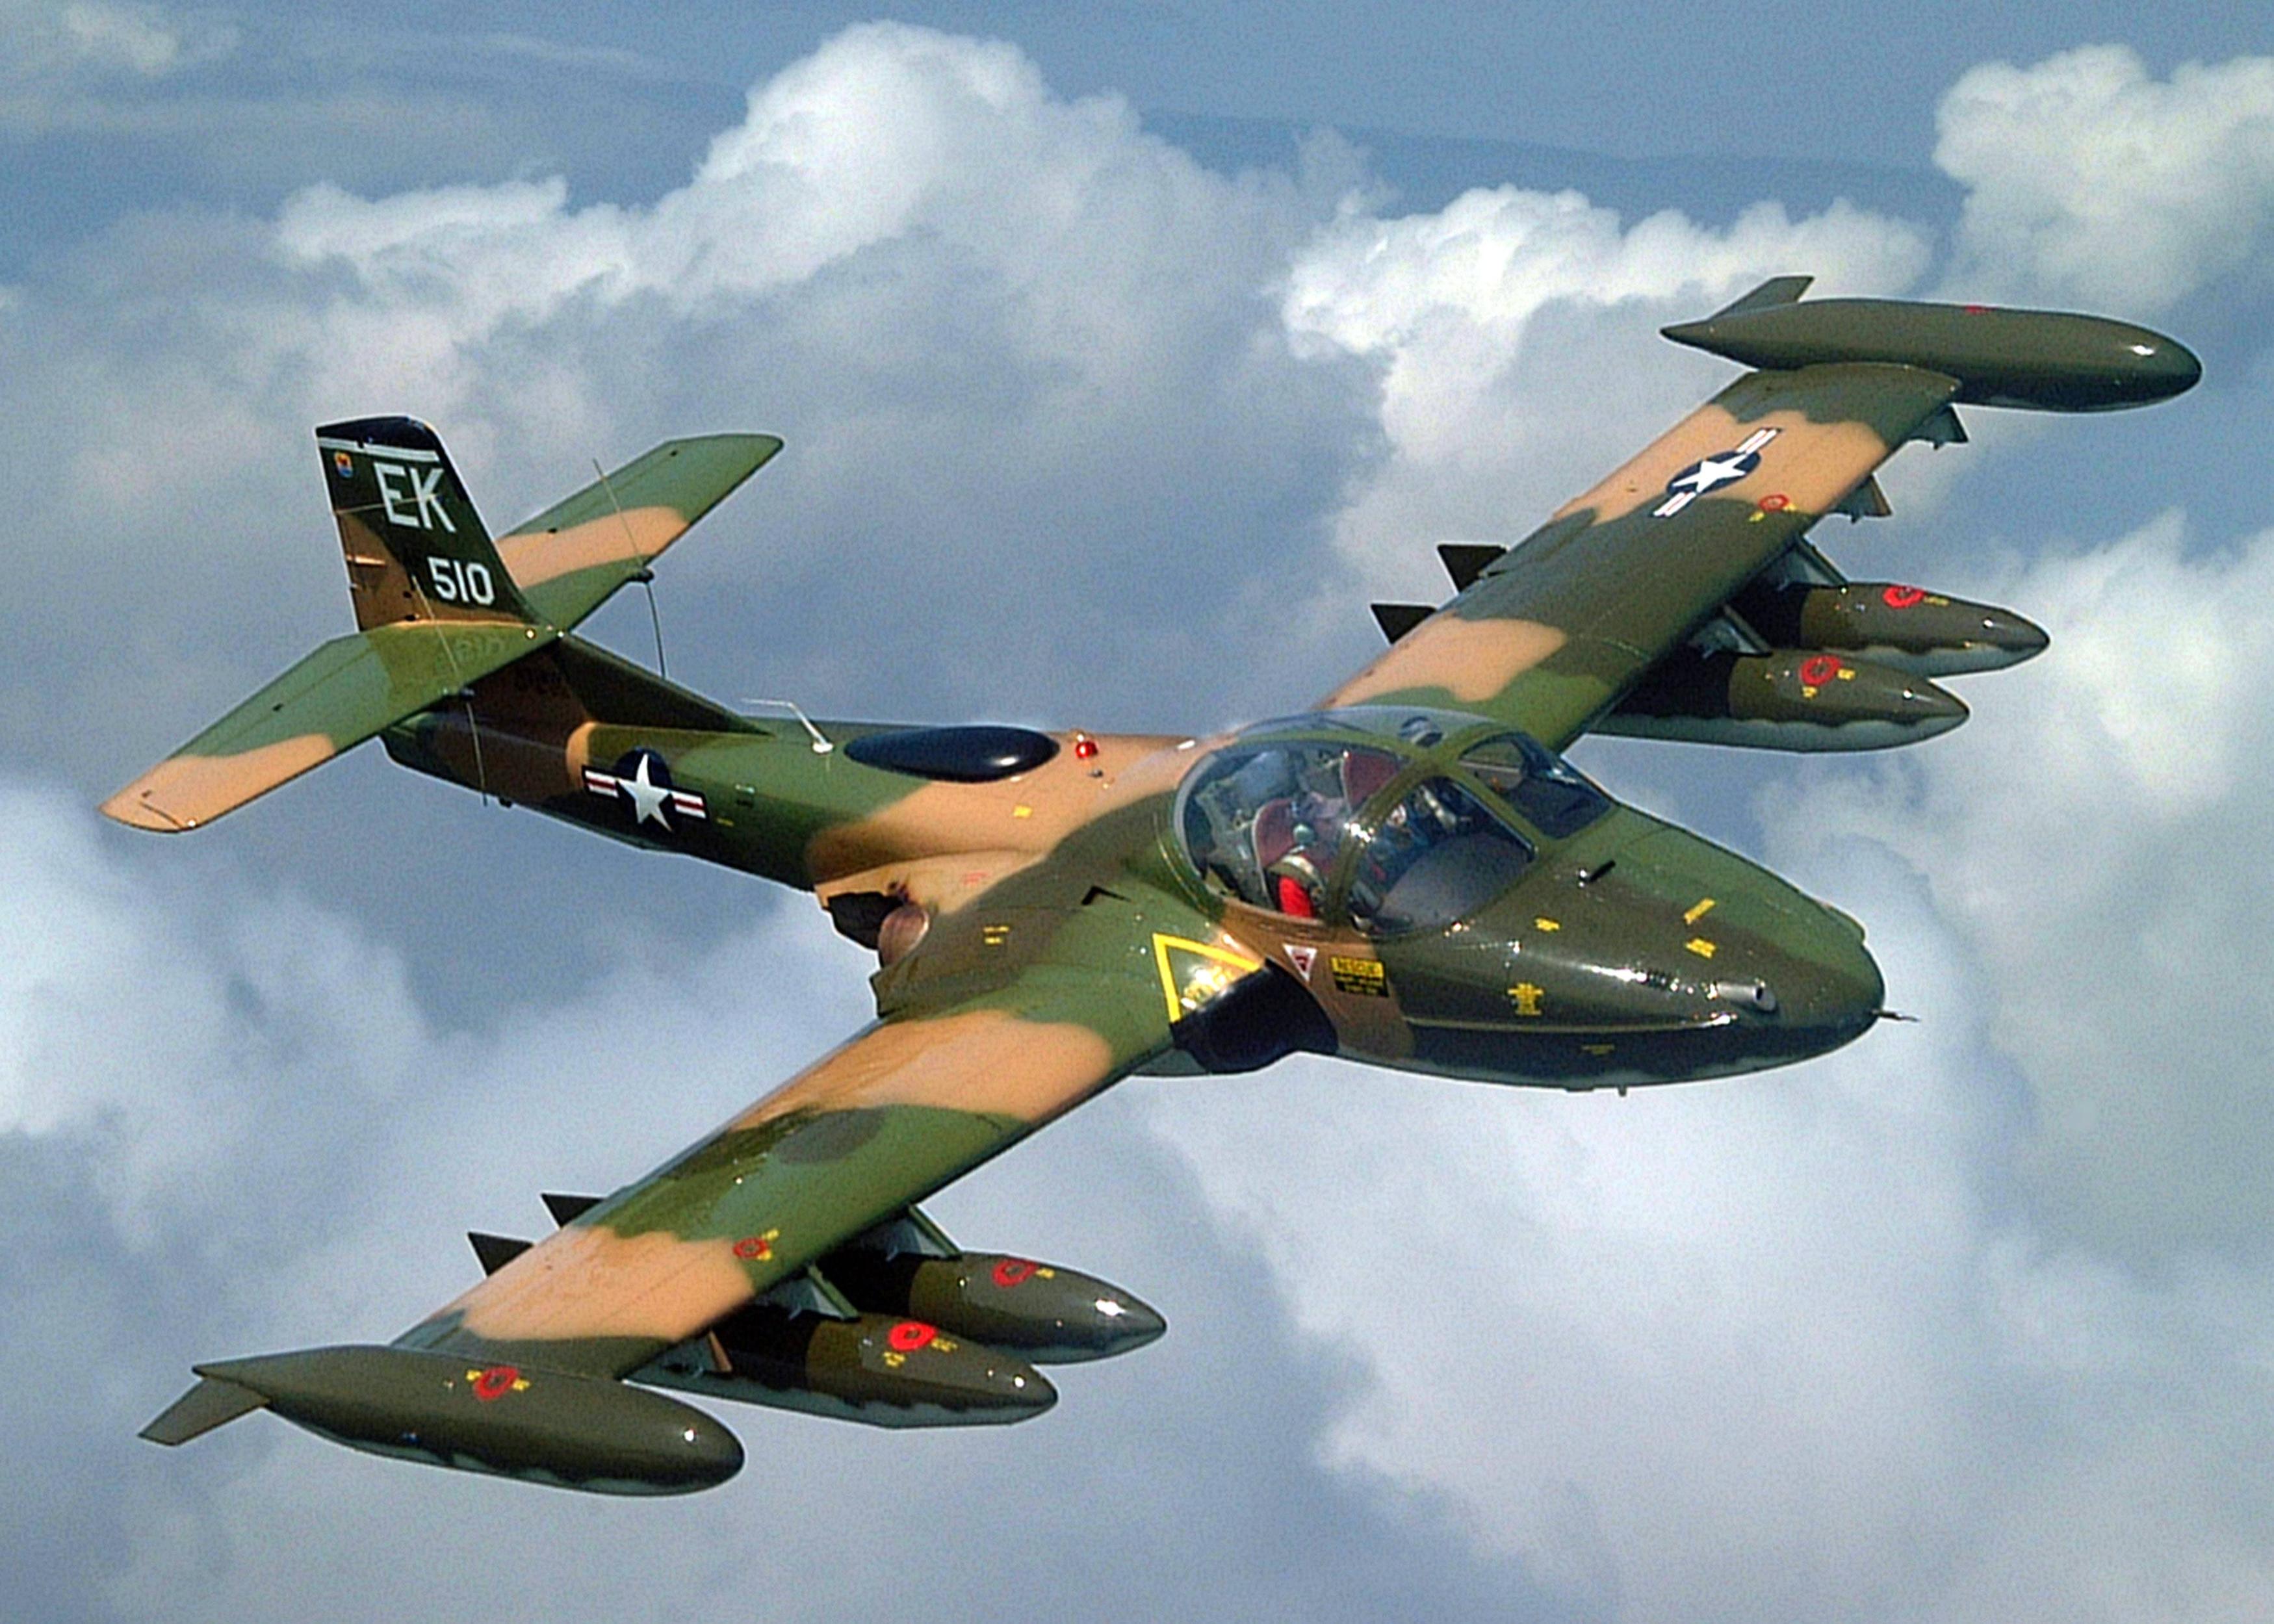 越战期间出动近两万架次的攻击机,美国a-37"蜻蜓"